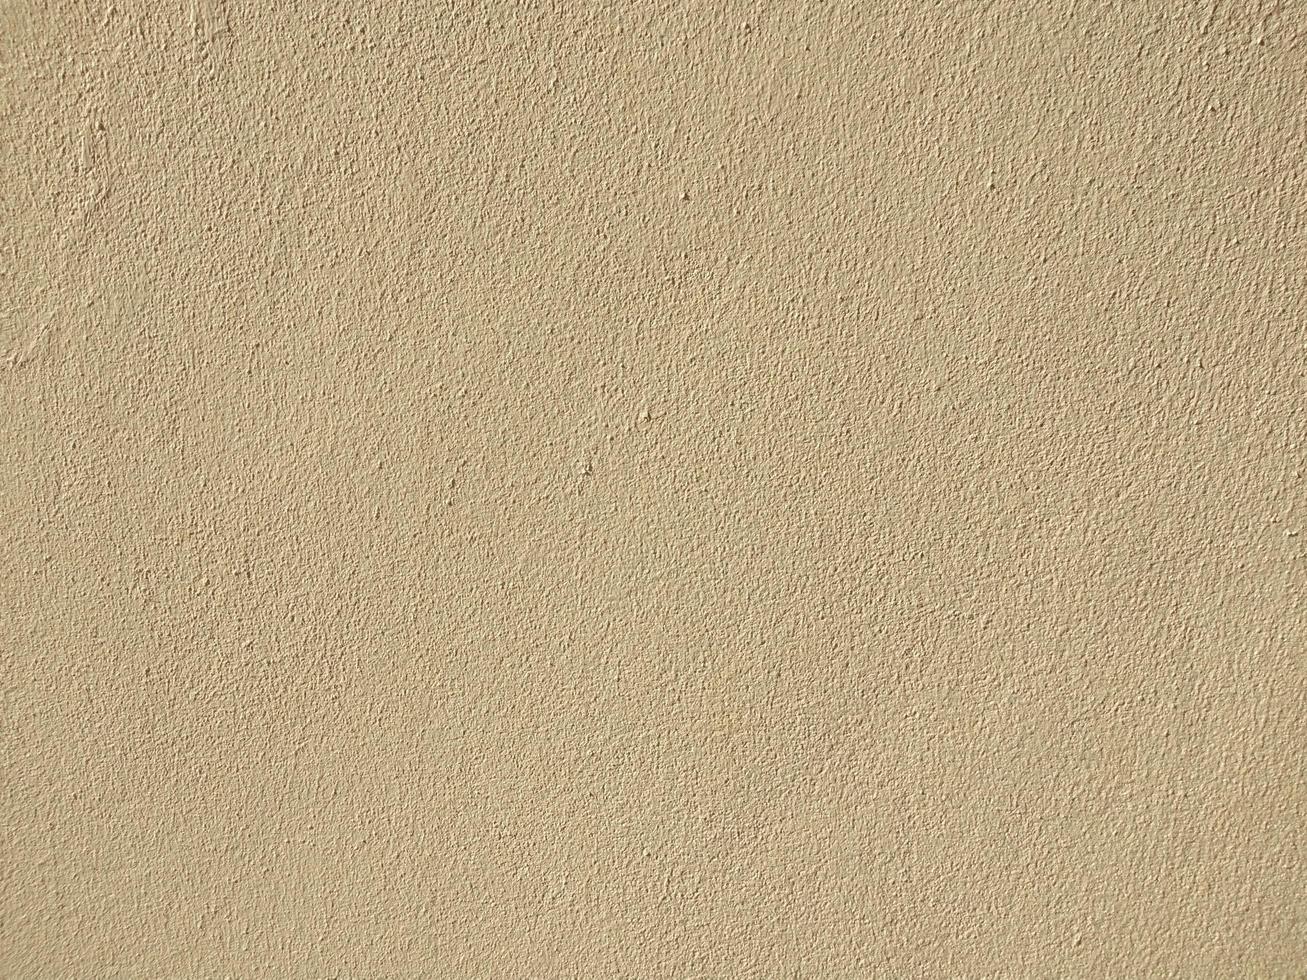 fundo de parede de concreto marrom claro fundo de textura áspera e papel de parede foto